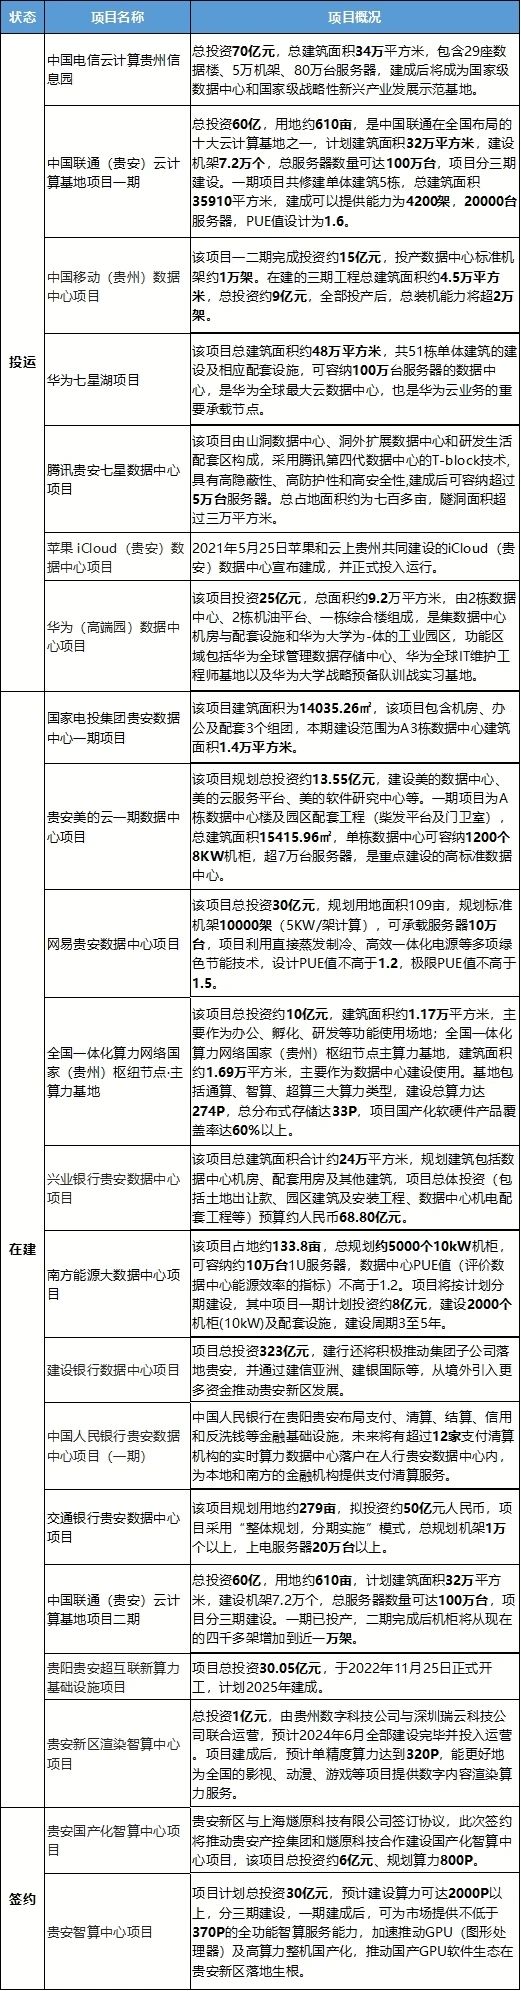 贵州地区数据中心部分列表